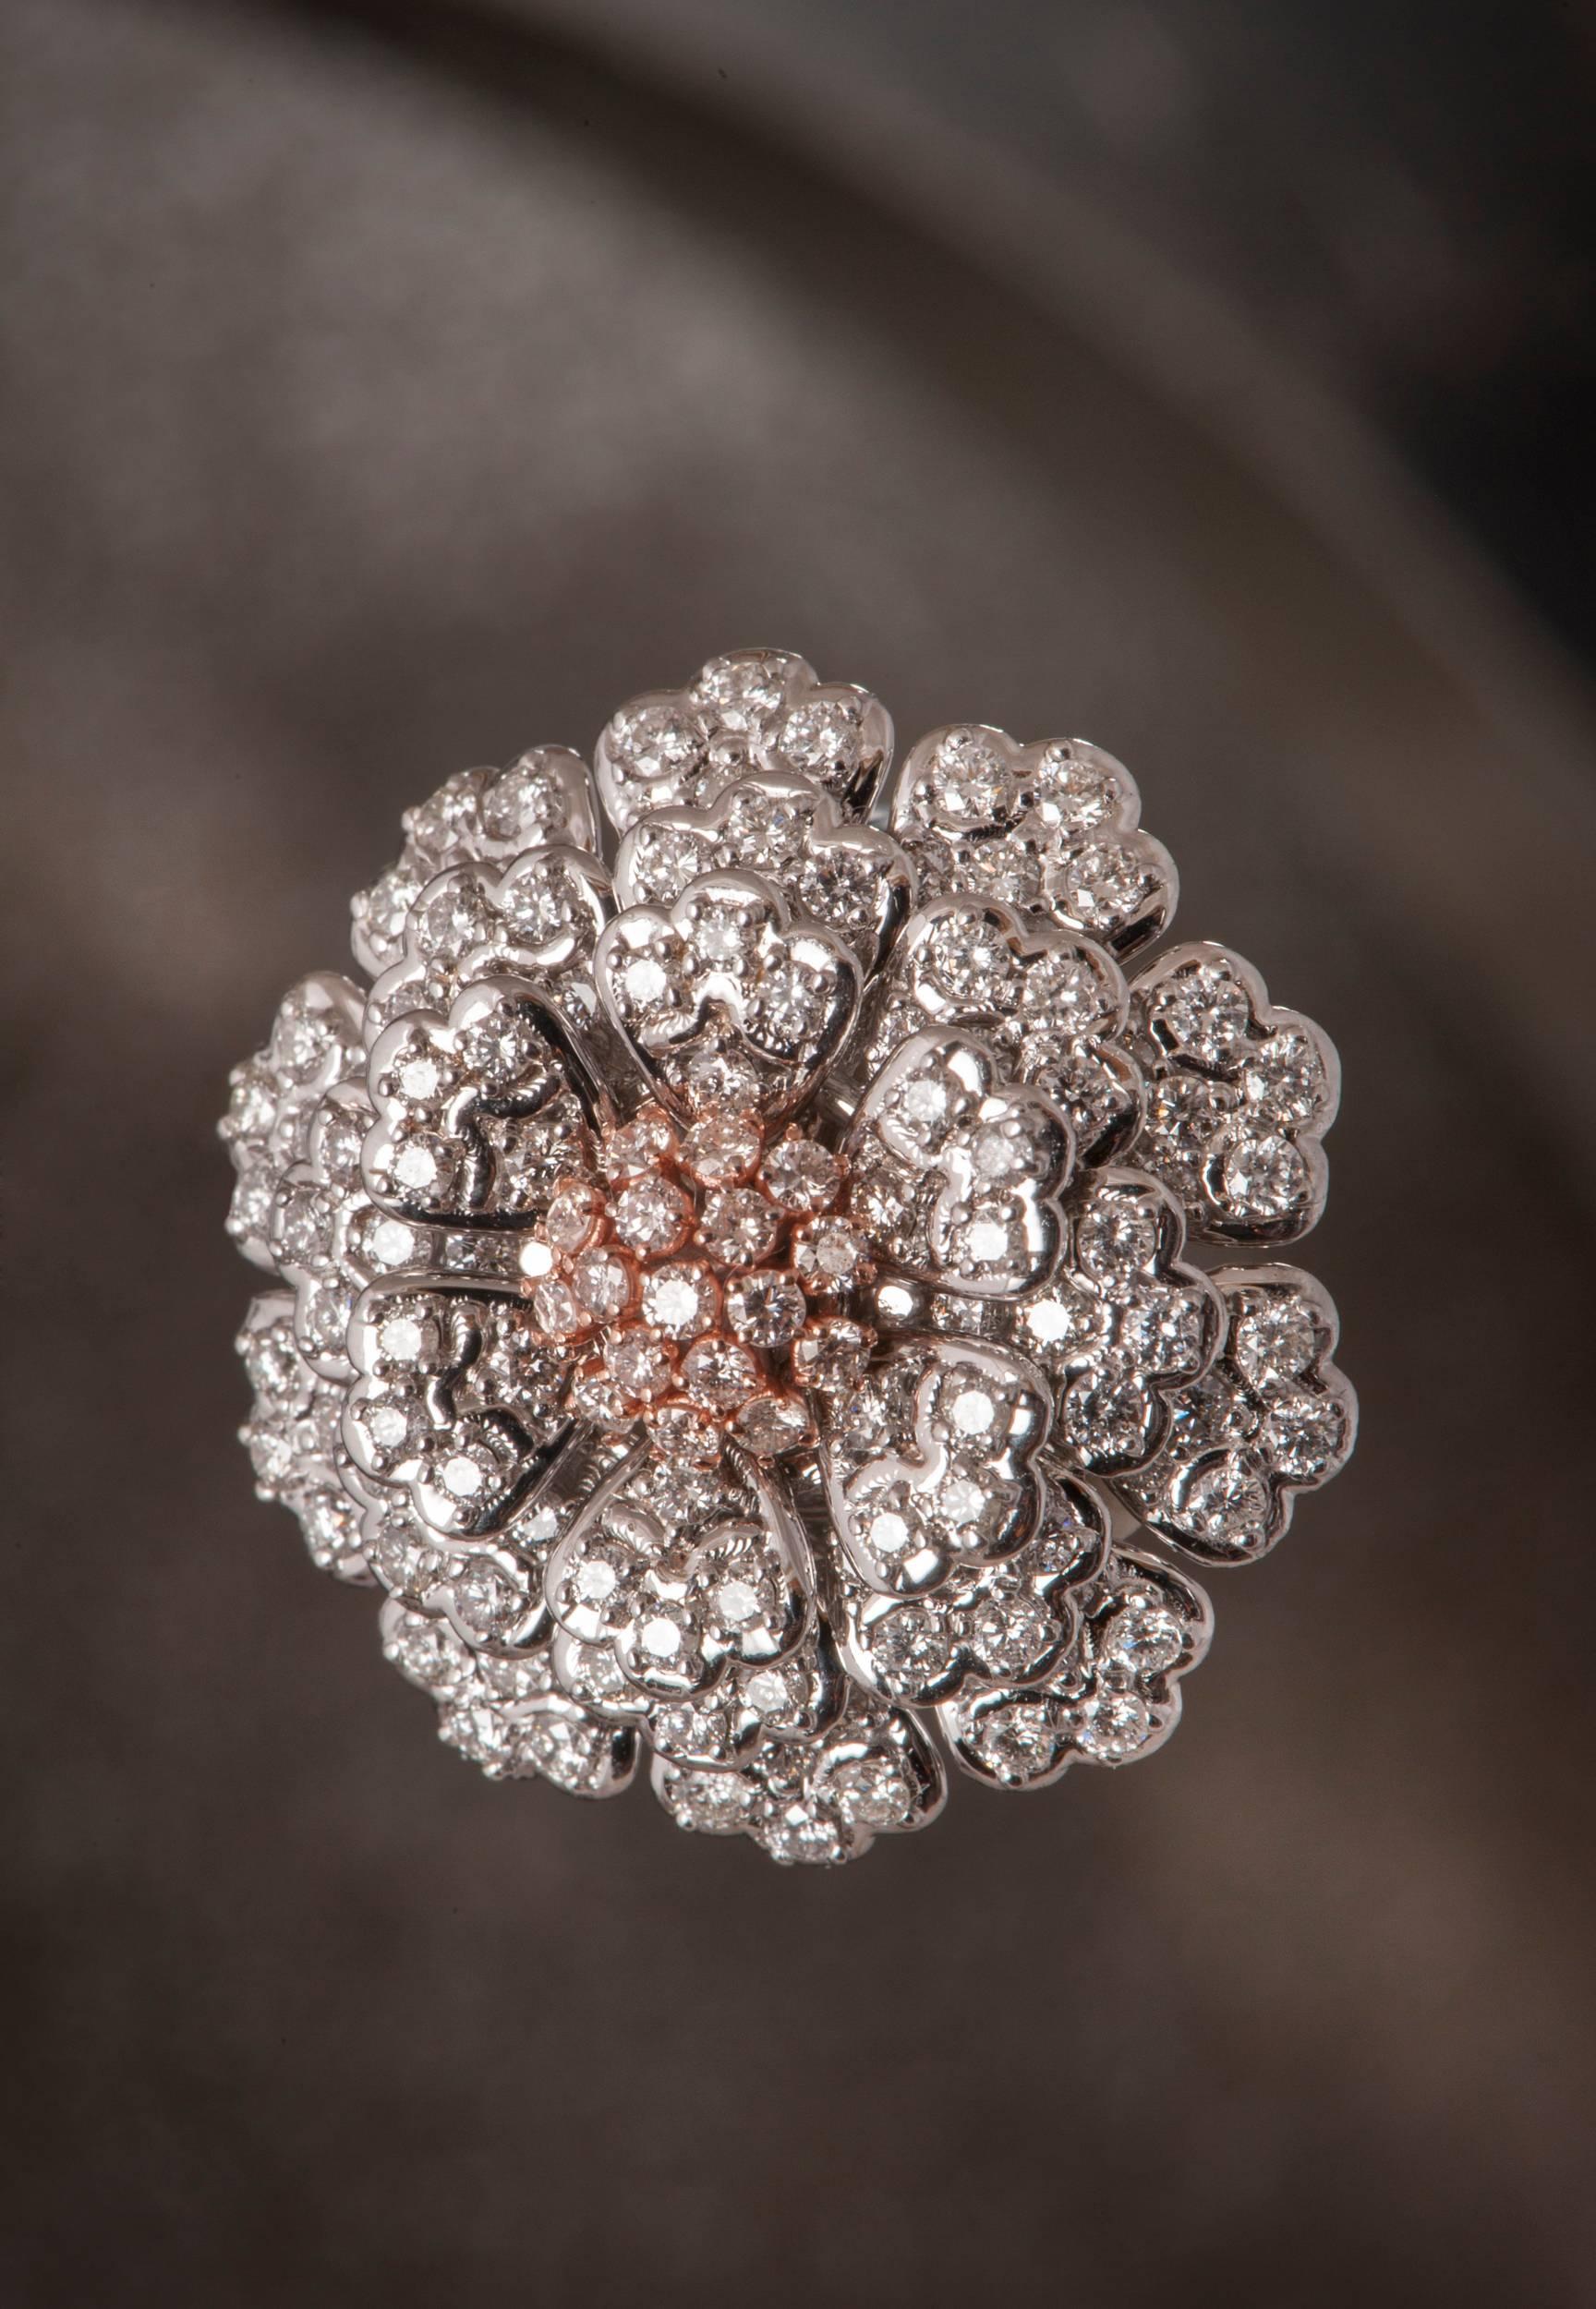 Dieser romantische Diamantring mit Blumenmuster ist aus massivem 18-karätigem Weiß- und Rotgold handgefertigt.  EGL-zertifiziert. 
Dieser einzigartige, zeitlose Ring ist mit 167 Diamanten im runden Brillantschliff von hoher Farbe D-E-F und